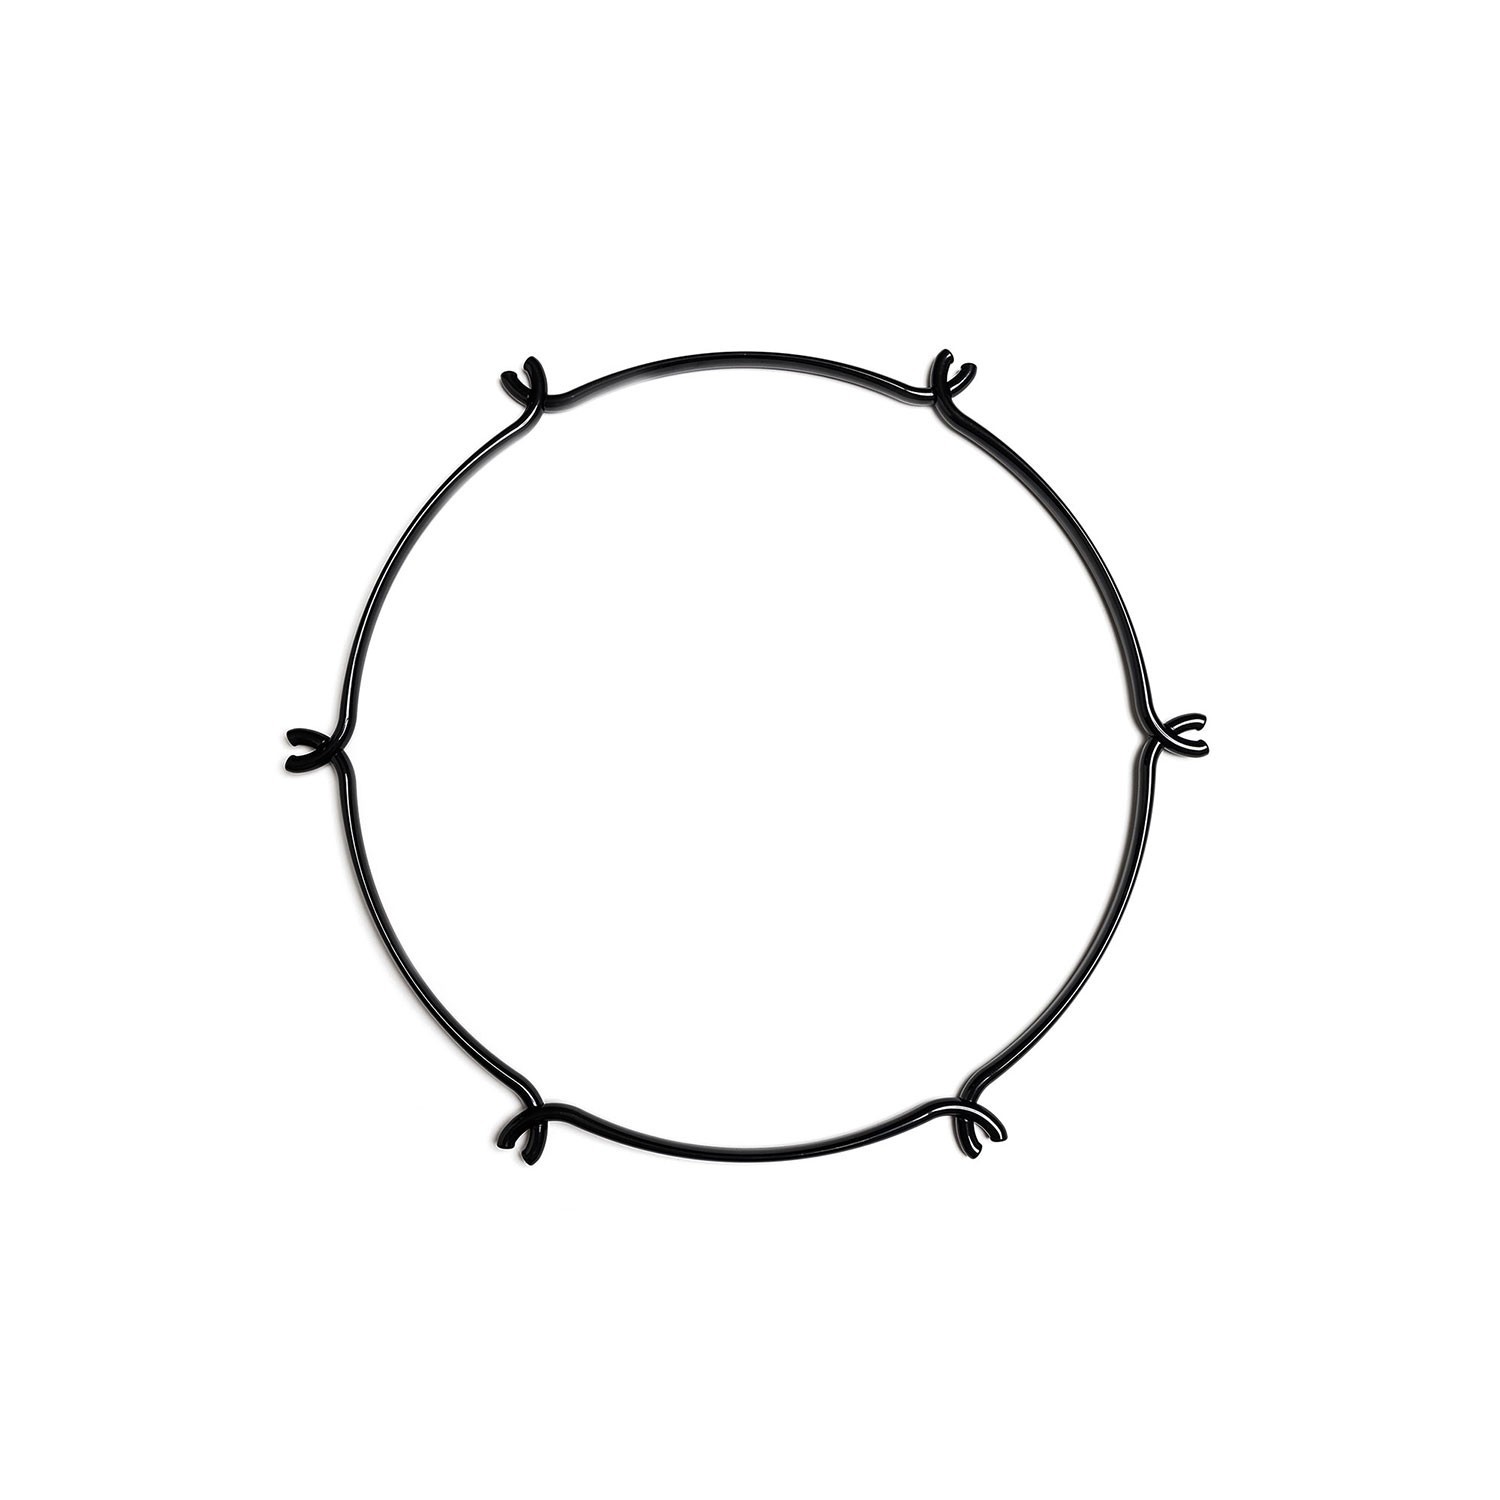 Cage Circular - Estructura para lámparas de araña